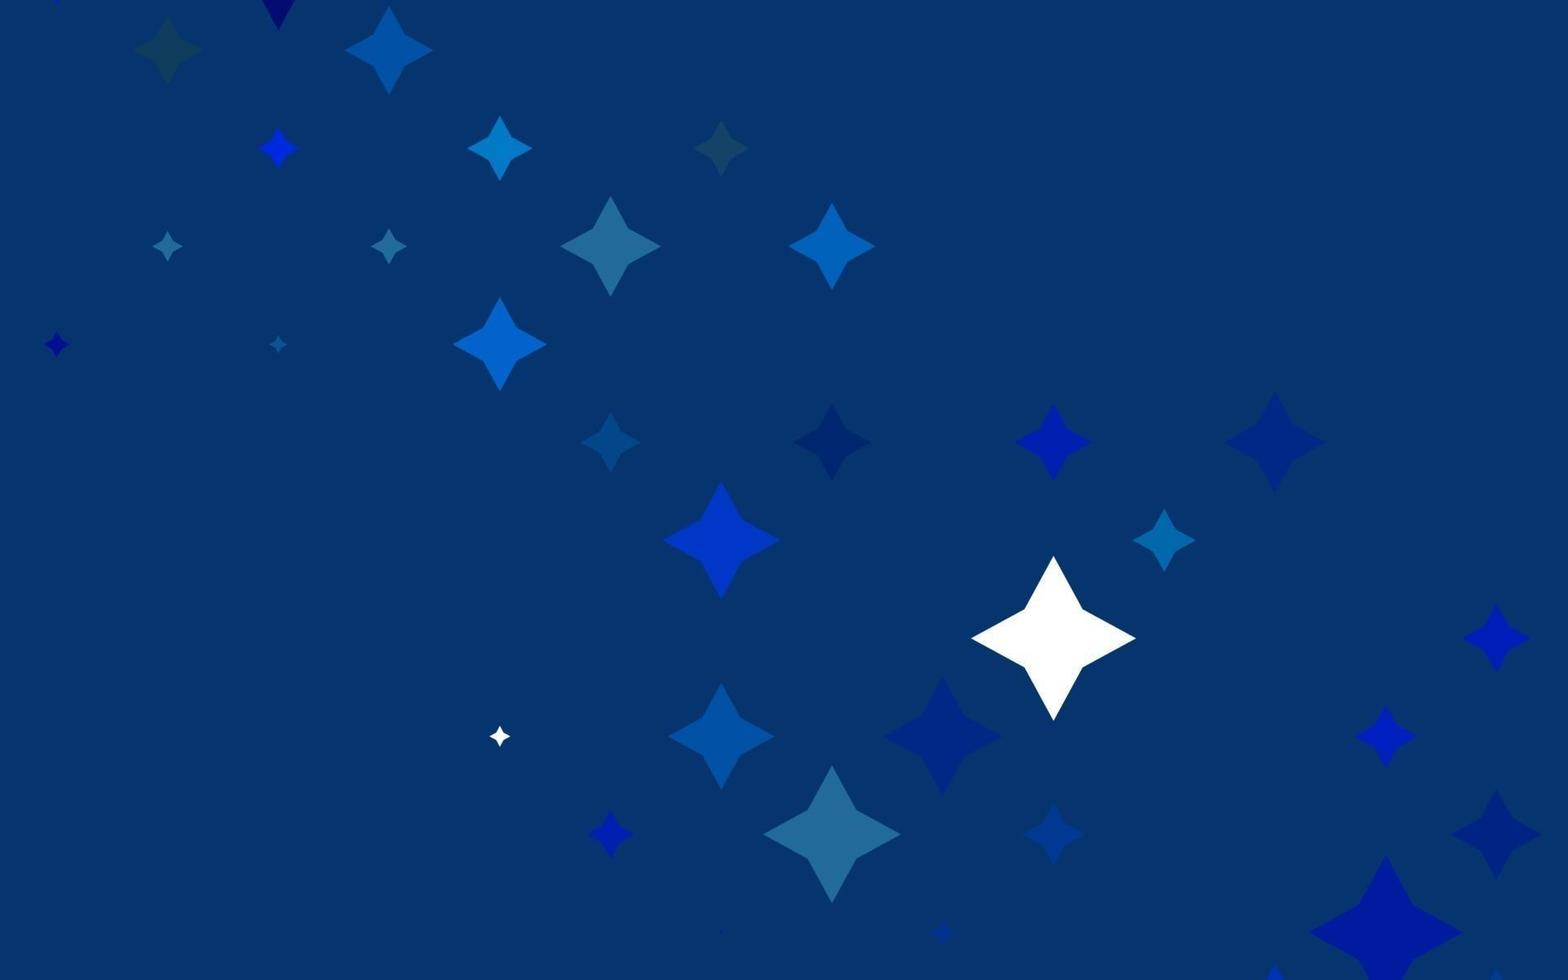 padrão de vetor azul claro com estrelas de Natal.